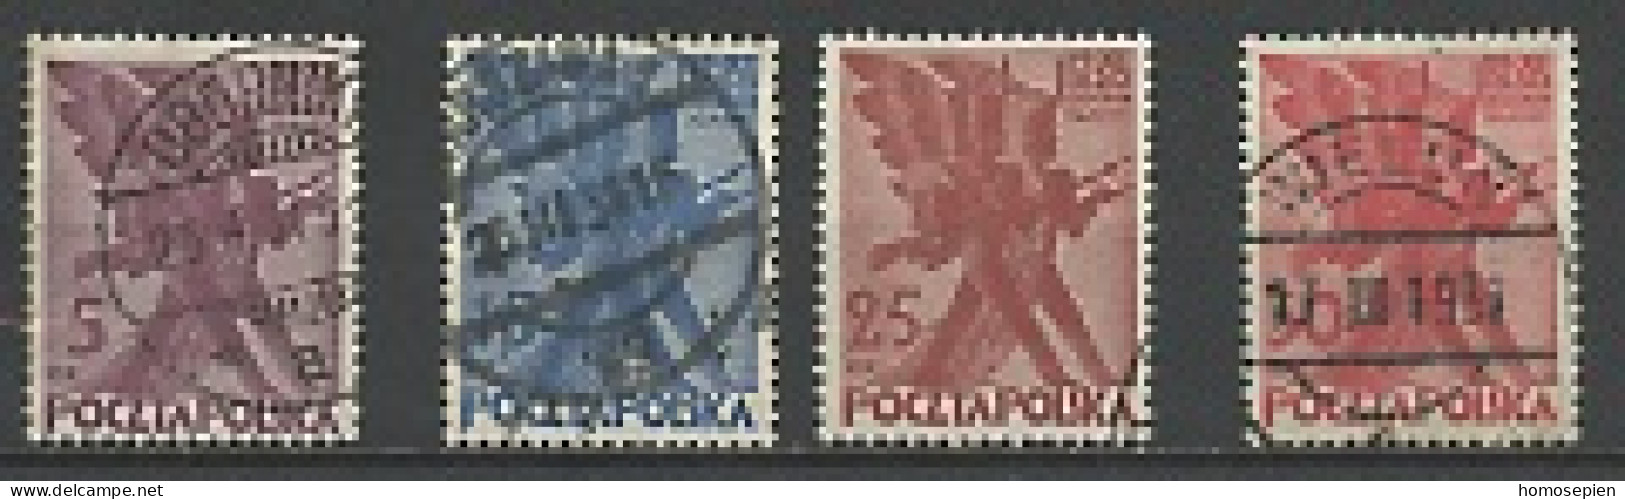 Pologne - Poland - Polen 1930 Y&T N°351 à 354 - Michel N°265 à 268 (o) - Insurrection De 1830 - Used Stamps